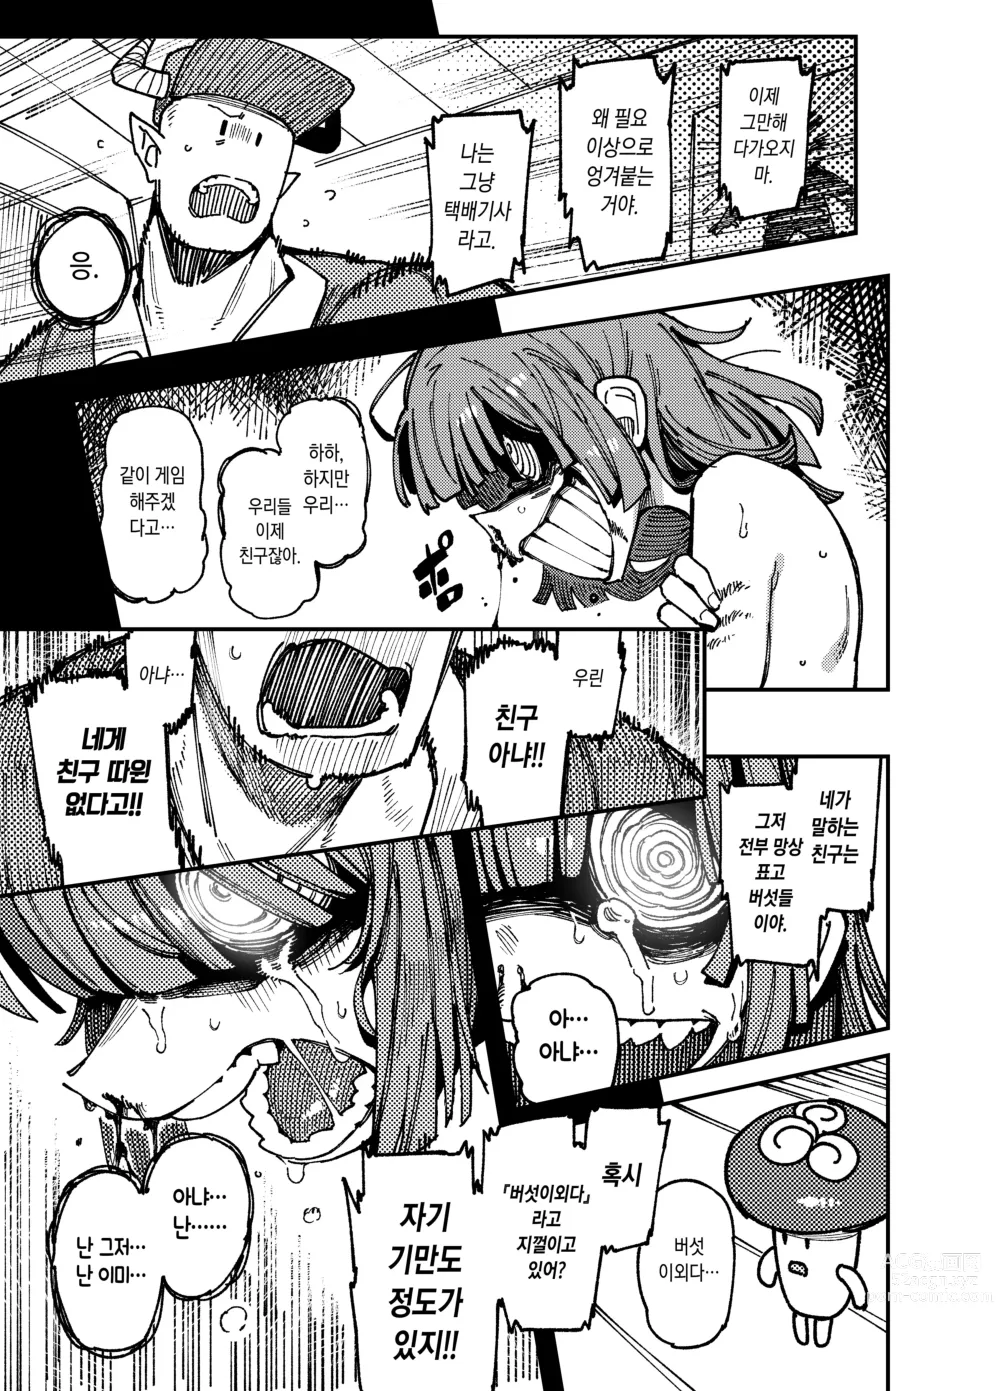 Page 50 of doujinshi 집이 너무 습해서 생긴 환각을 유발하는 버섯을 잘못 먹고 발정난 뒤의 이야기